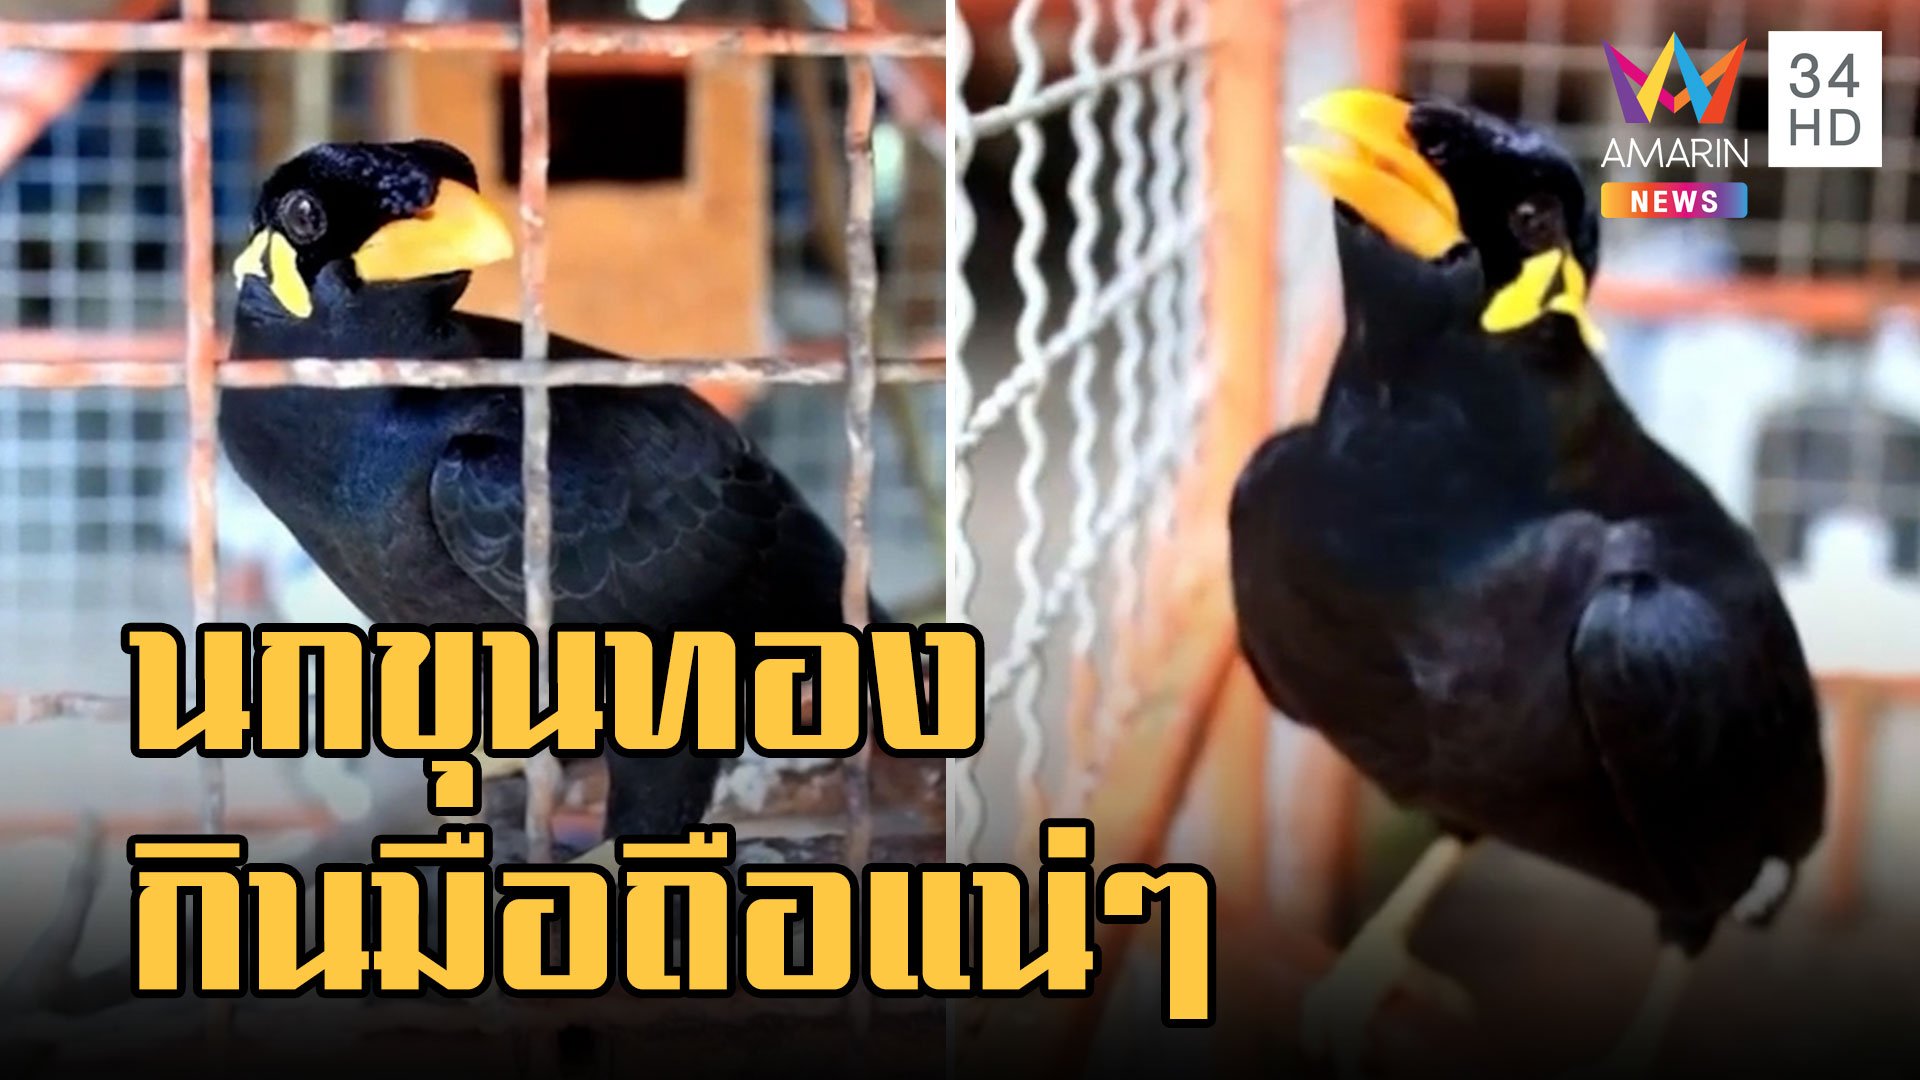 "เจ้าฝอยทอง" นกขุนทองเลียนแบบเสียงมือถือ บอกเลยเหมือนมาก! | ข่าวอรุณอมรินทร์ | 2 พ.ย. 65 | AMARIN TVHD34